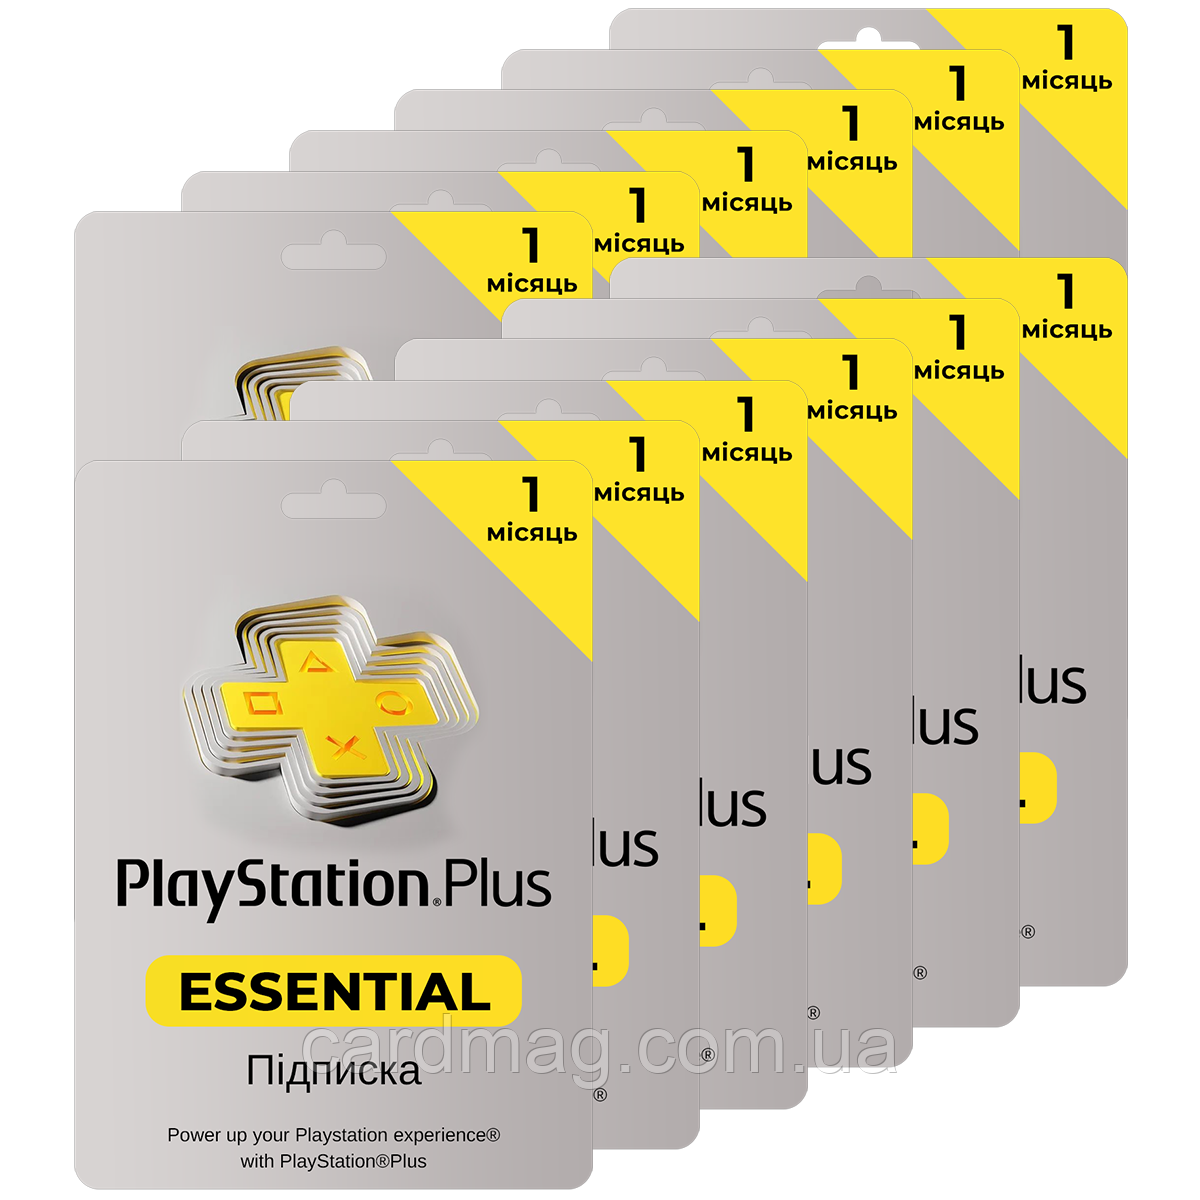 Подписка PlayStation Plus Essential на Месяцев (Активация Турция) — в Категории "Карты Пополнения Игрового Счета" на Bigl.ua (1637843381)